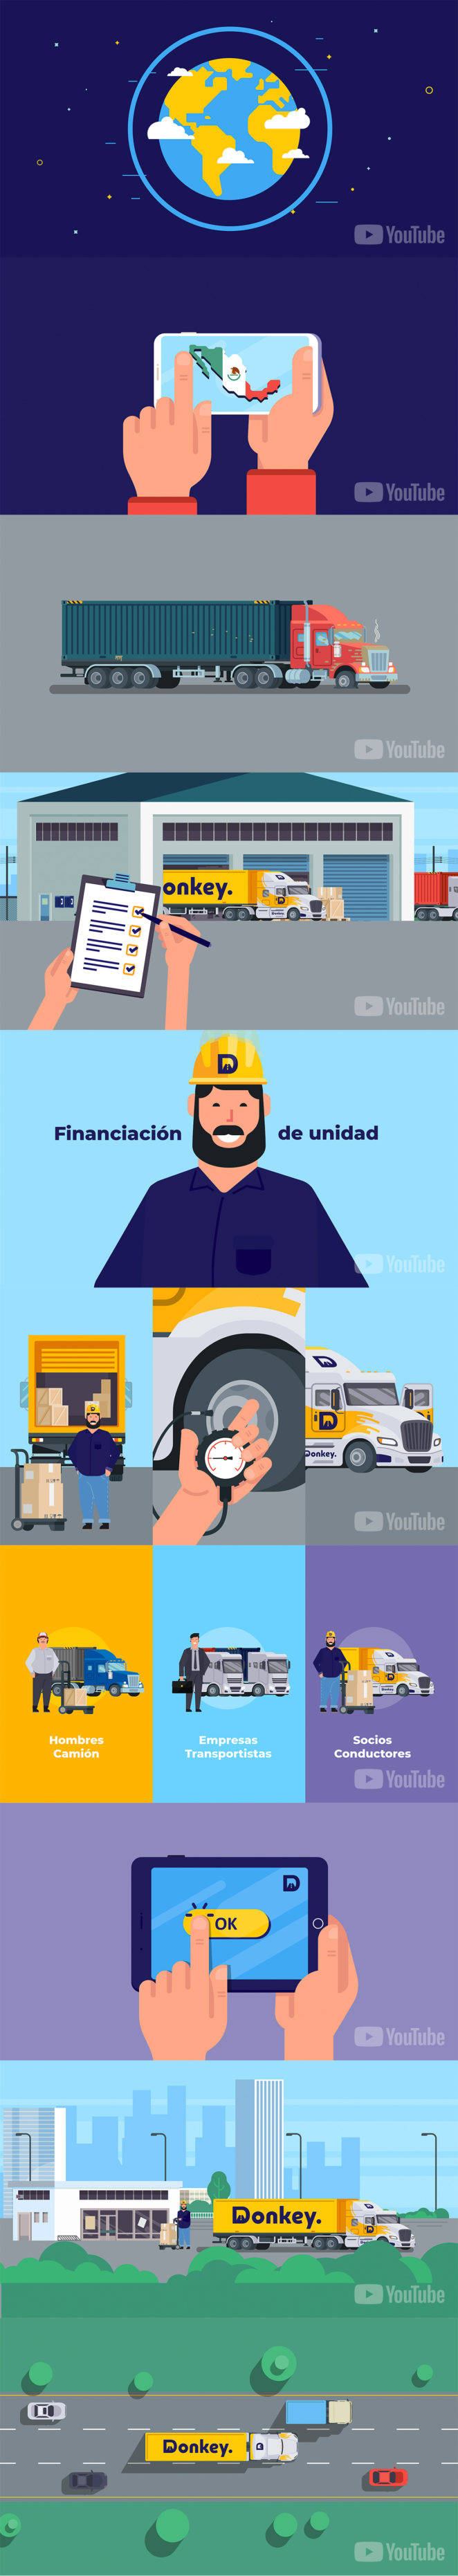 Creación de guión, ilustraciones, animación, locución, post producción de video corporativo animado para empresa dedicada al transporte de carga sobre rueda entre los principales puertos y ciudades de México.